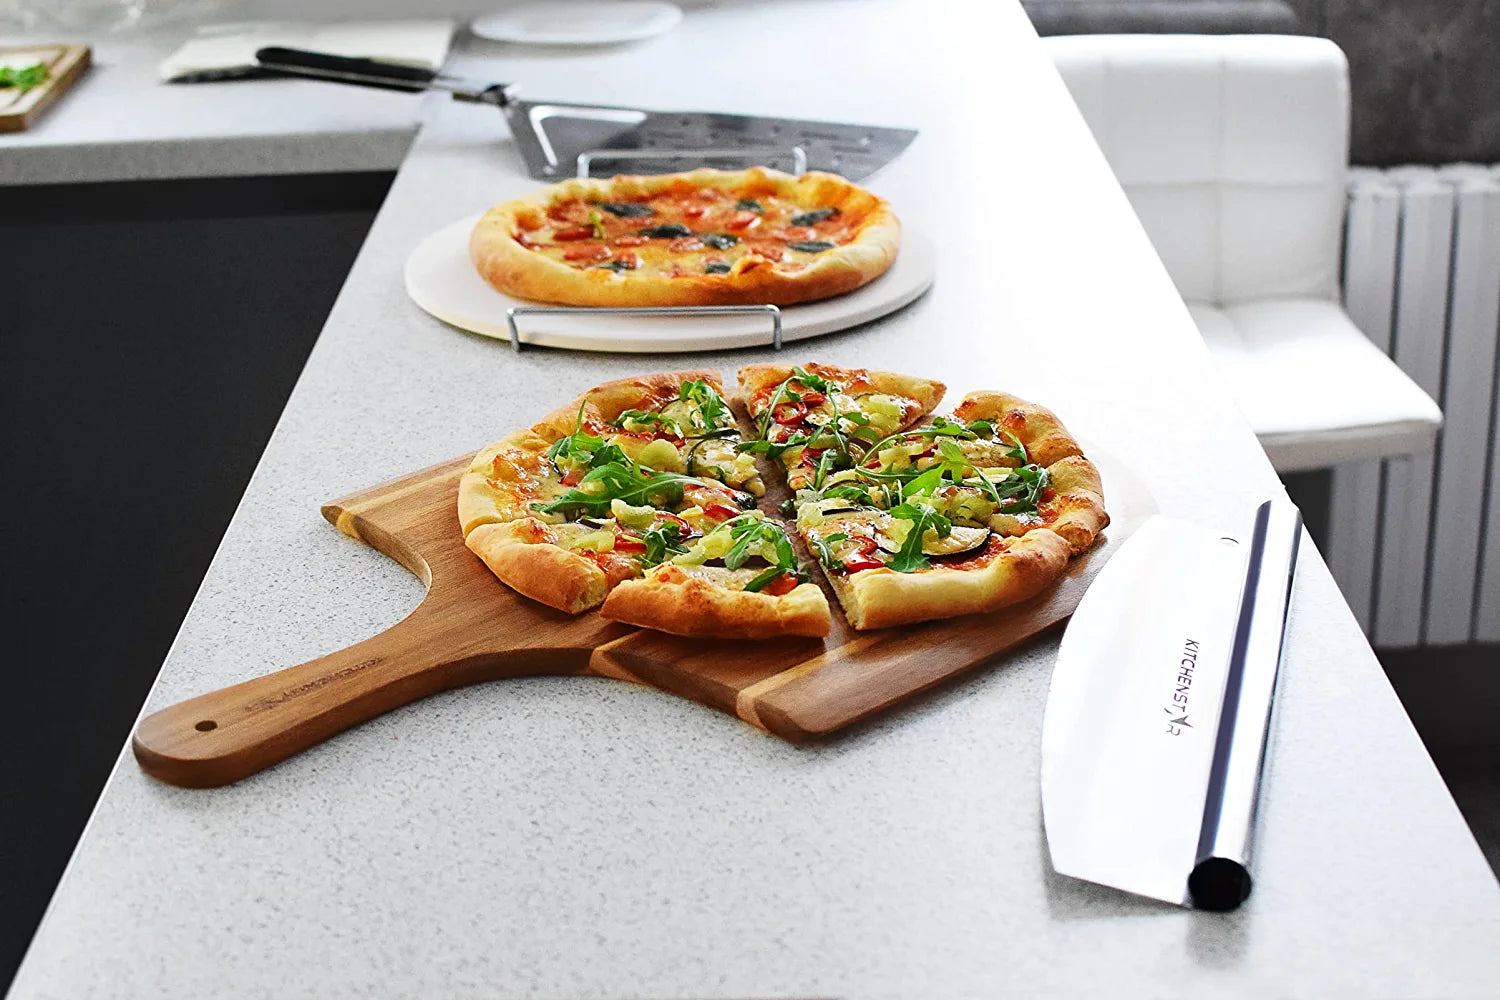 KitchenStar Pizza Cutter Rocker 12 inch - Stainless Steel Pizza Slicer